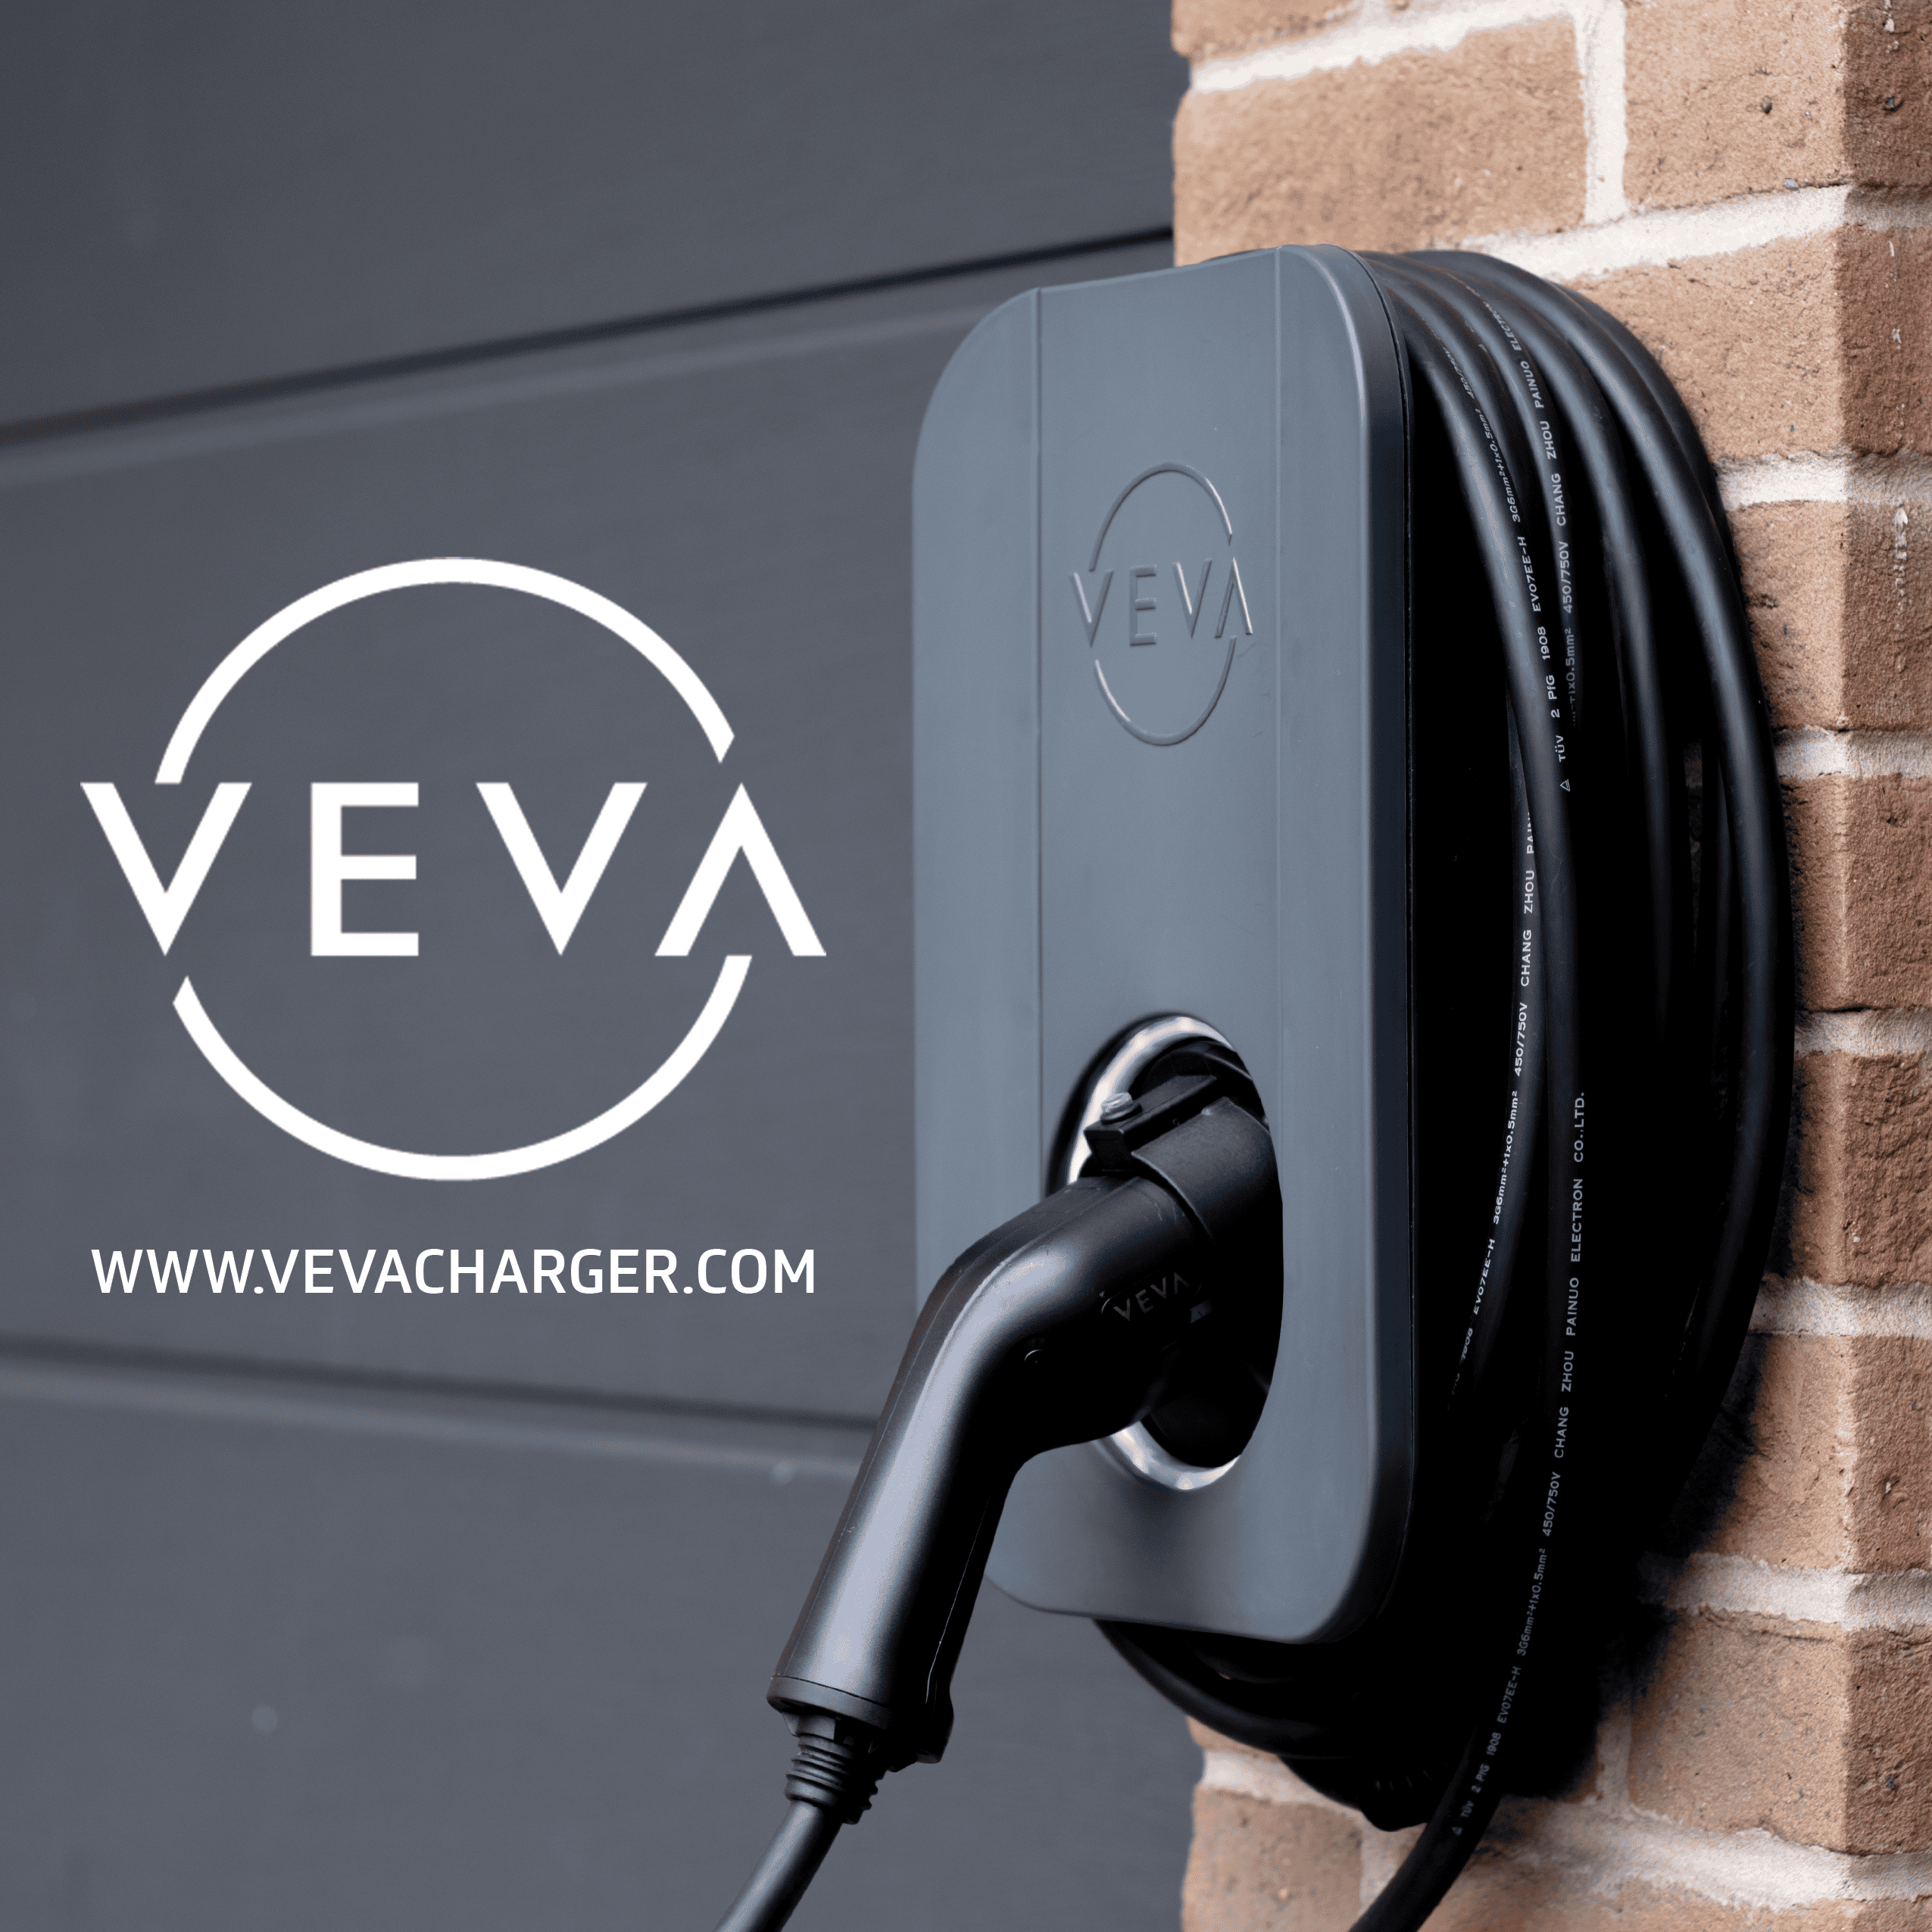 VEVA 7.4kW EV charger, 8m tethered